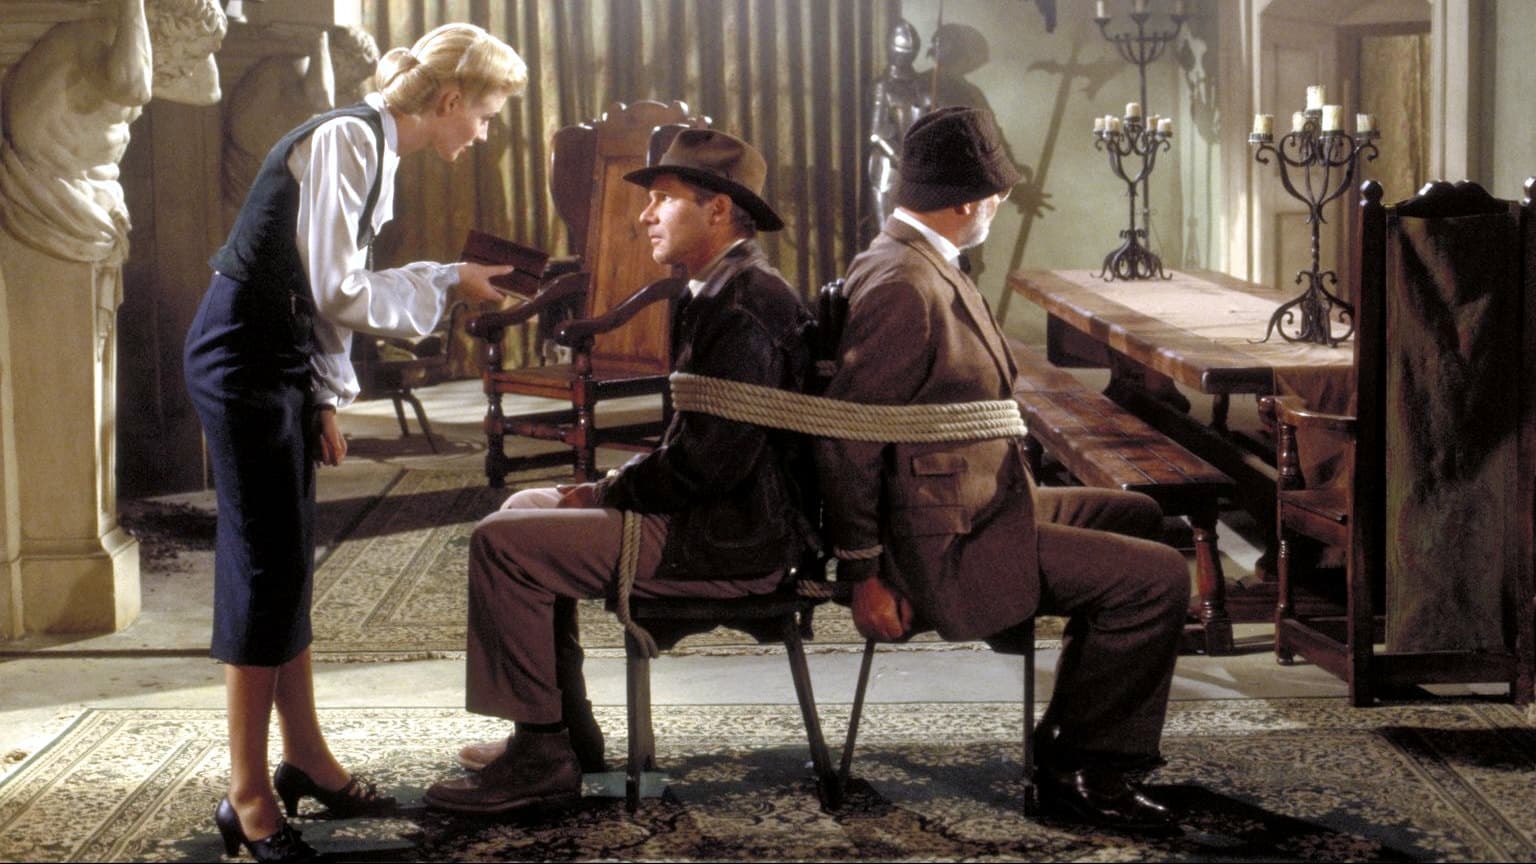 Indiana Jones és az utolsó kereszteslovag (1989)